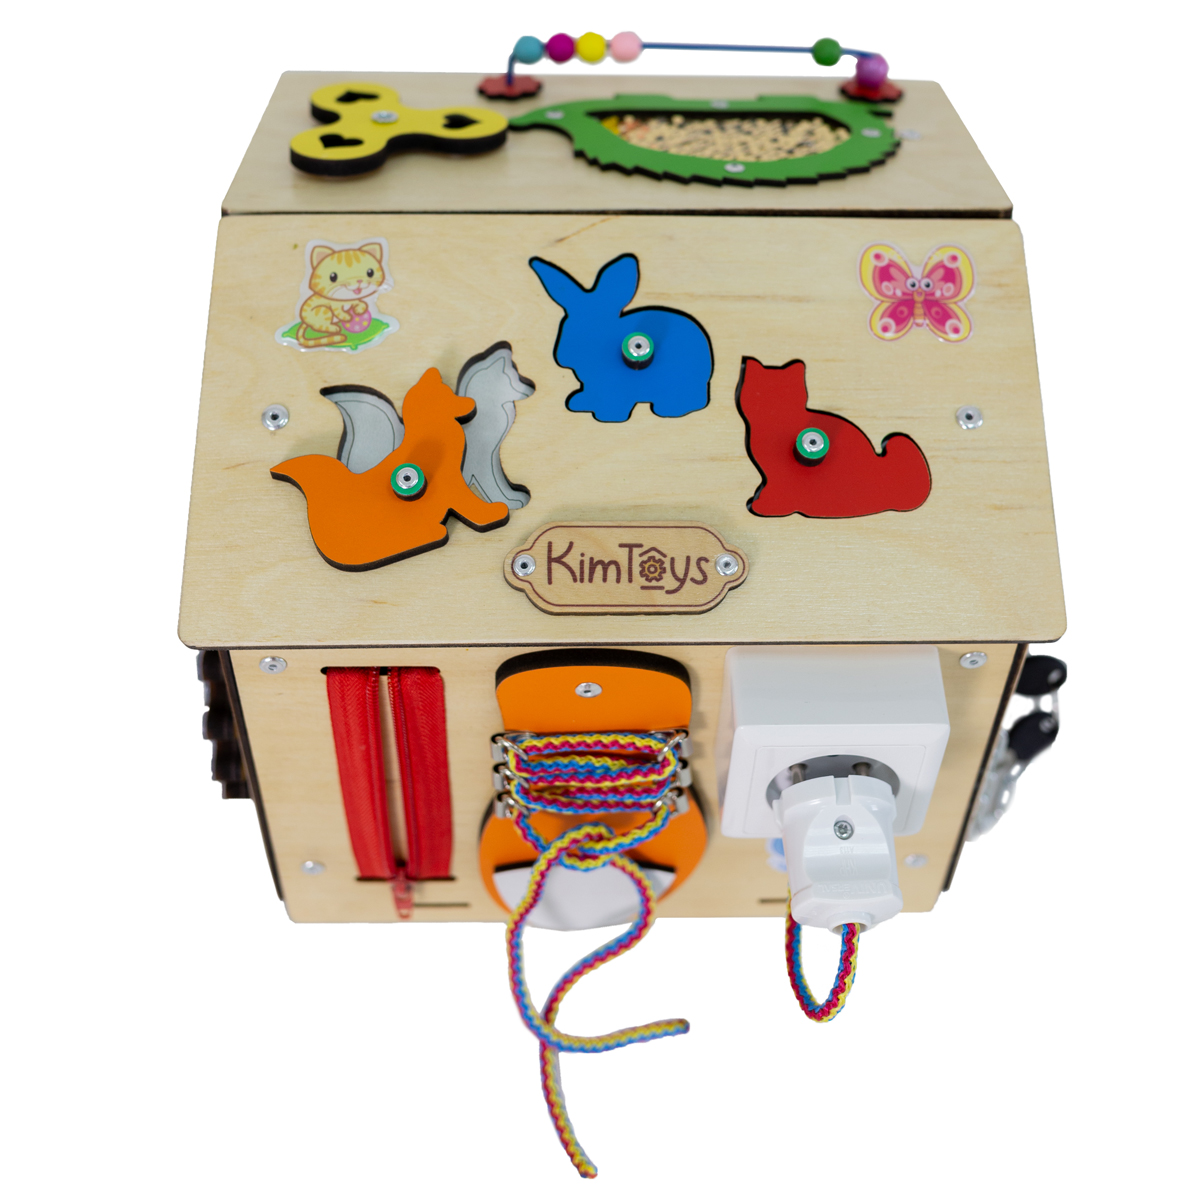 Бизиборд KimToys Домик-игрушка для девочек и мальчиков - фото 7